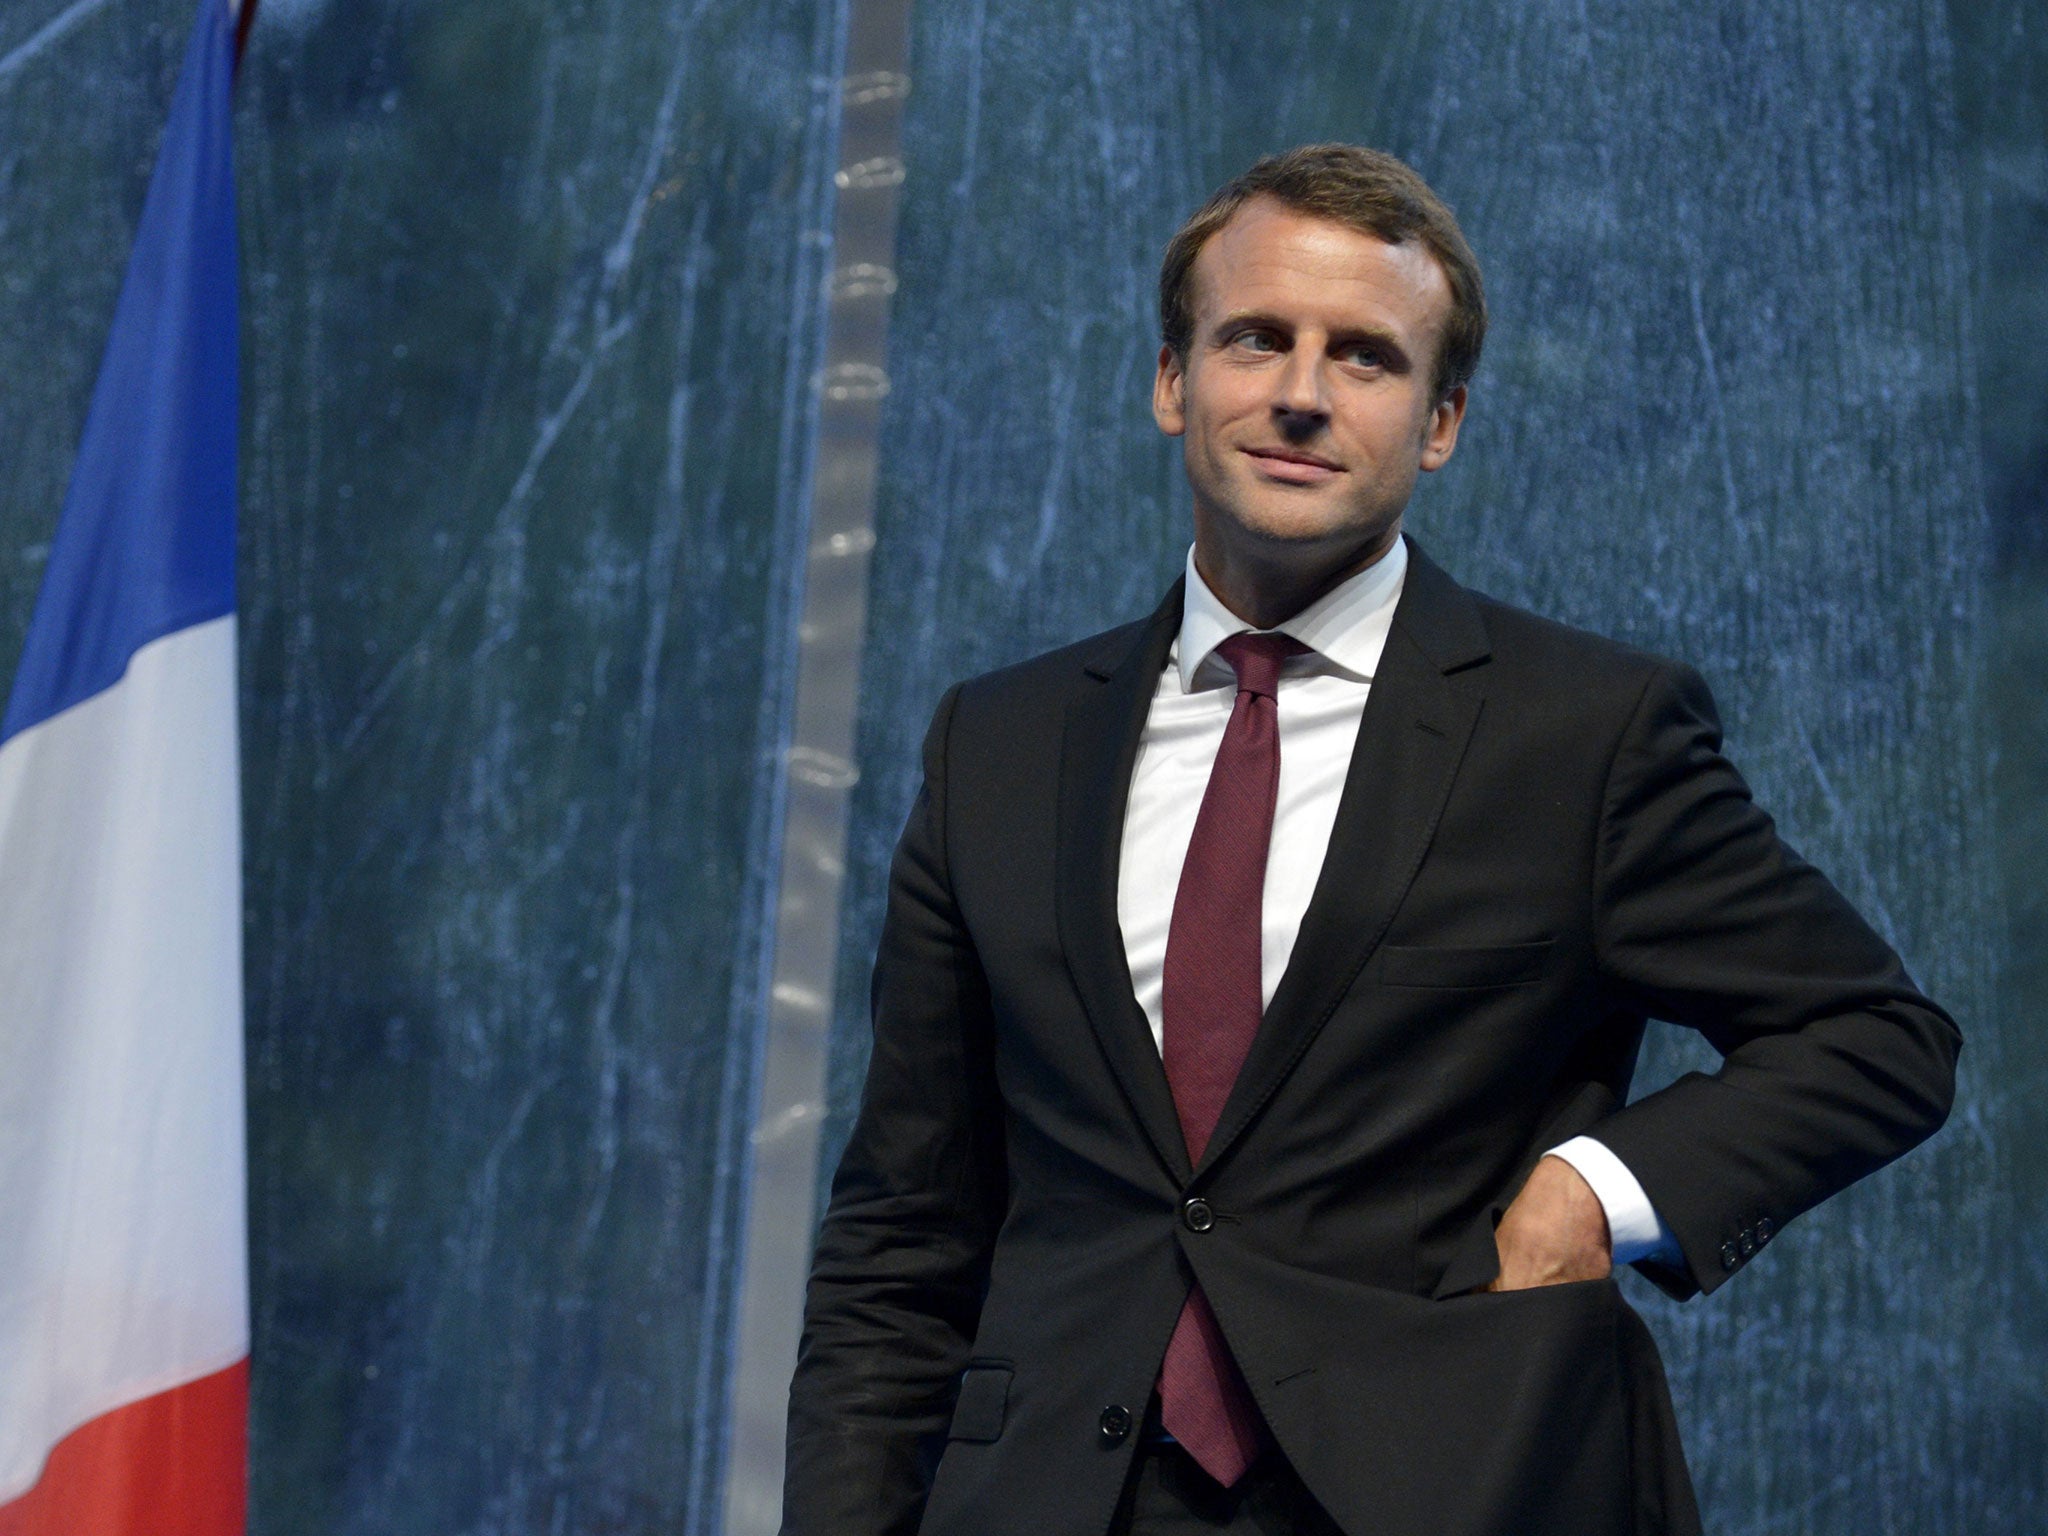 The Economy Minister Emmanuel Macron